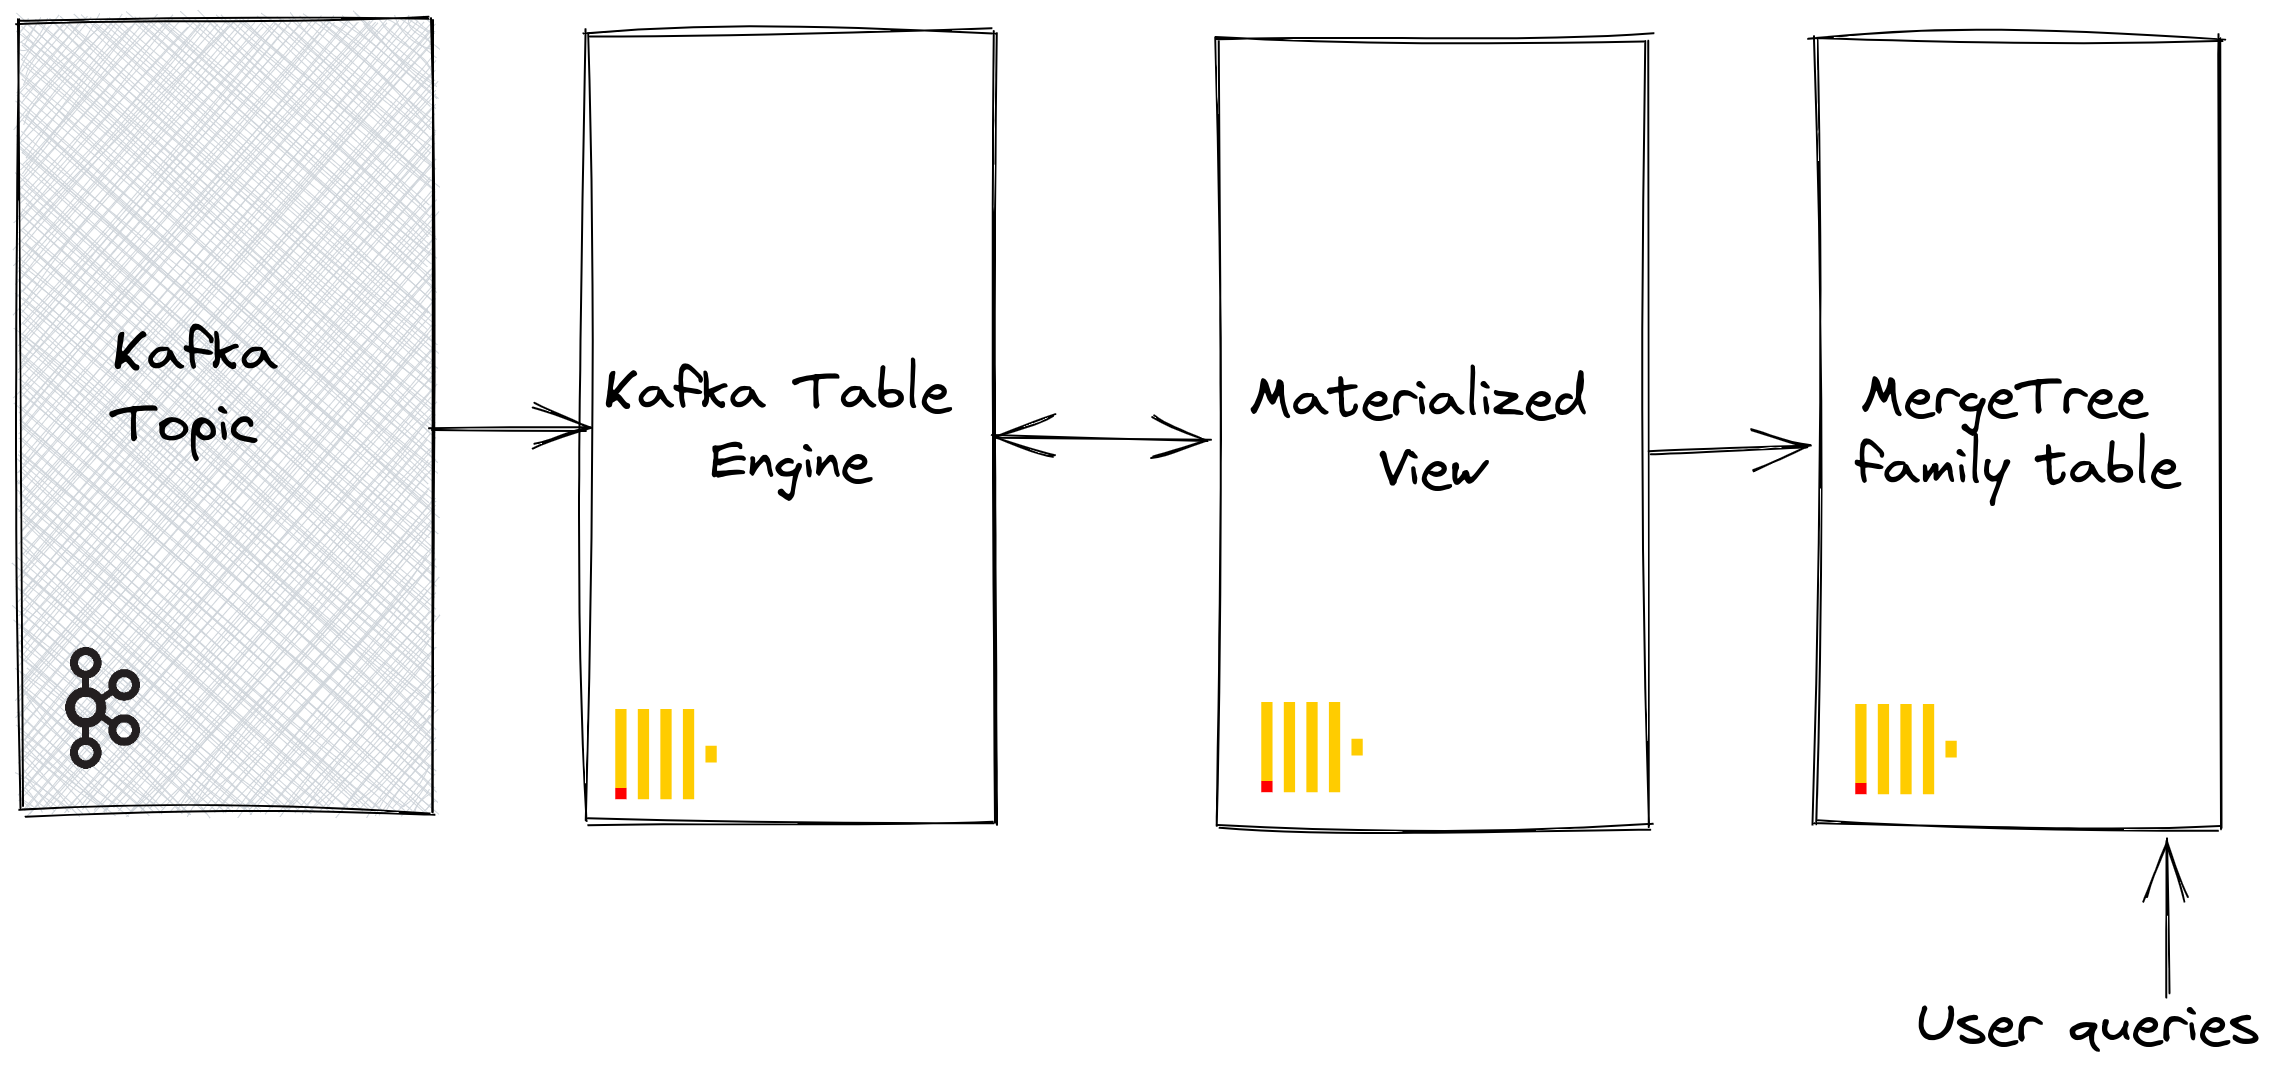 Kafka table engine